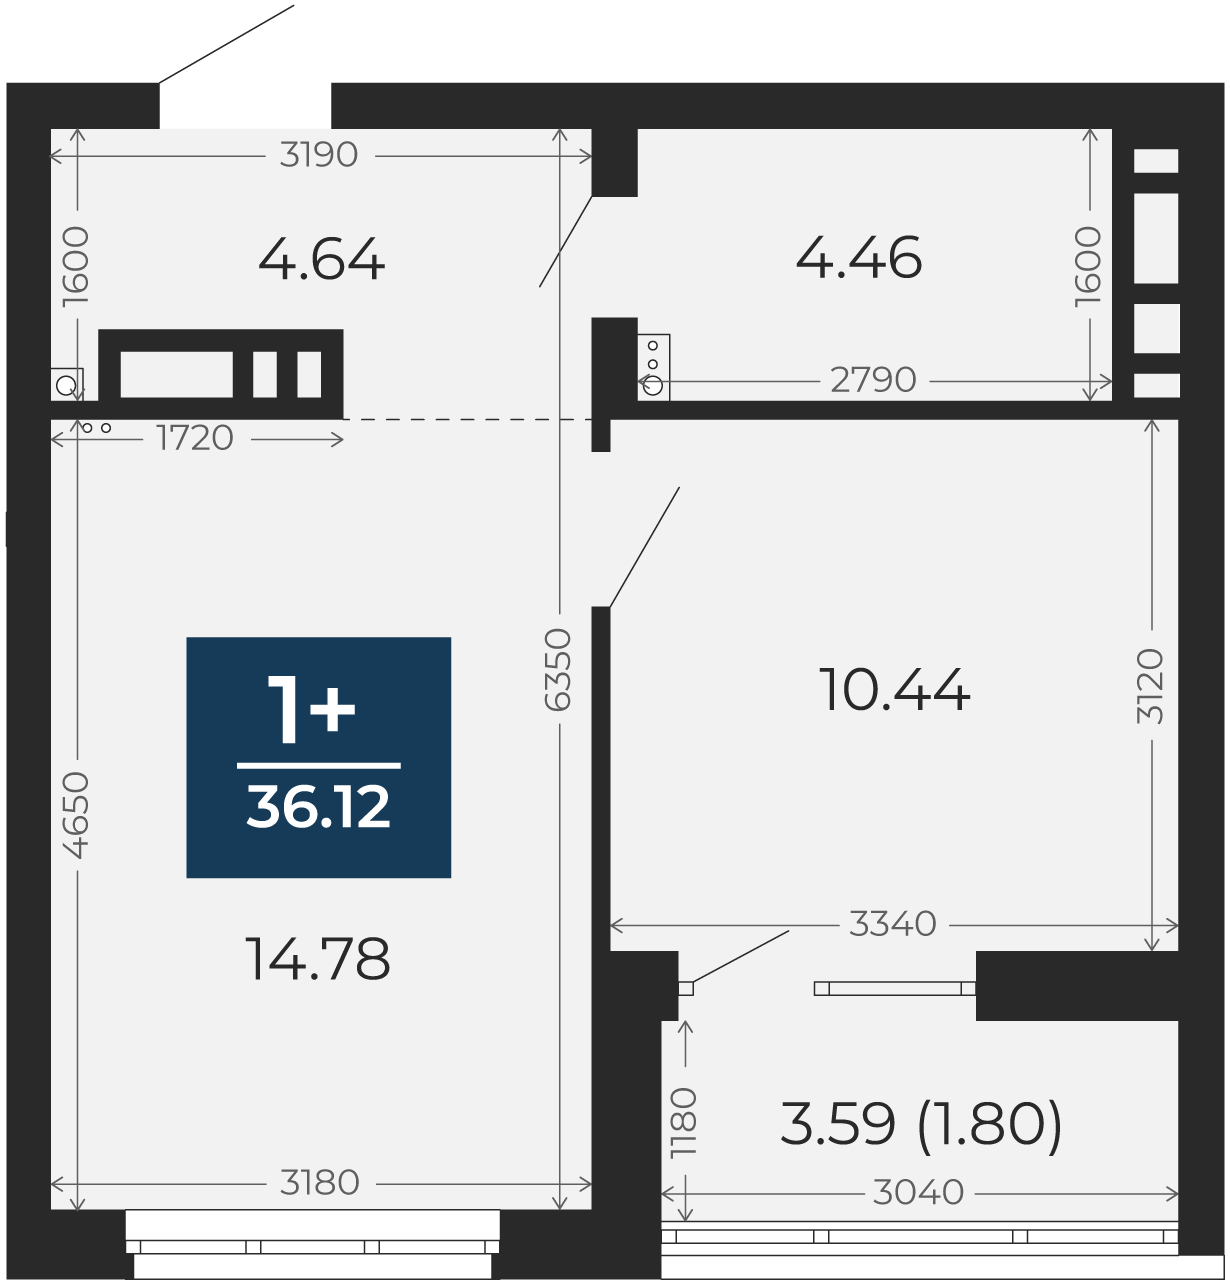 Квартира № 254, 1-комнатная, 36.12 кв. м, 15 этаж